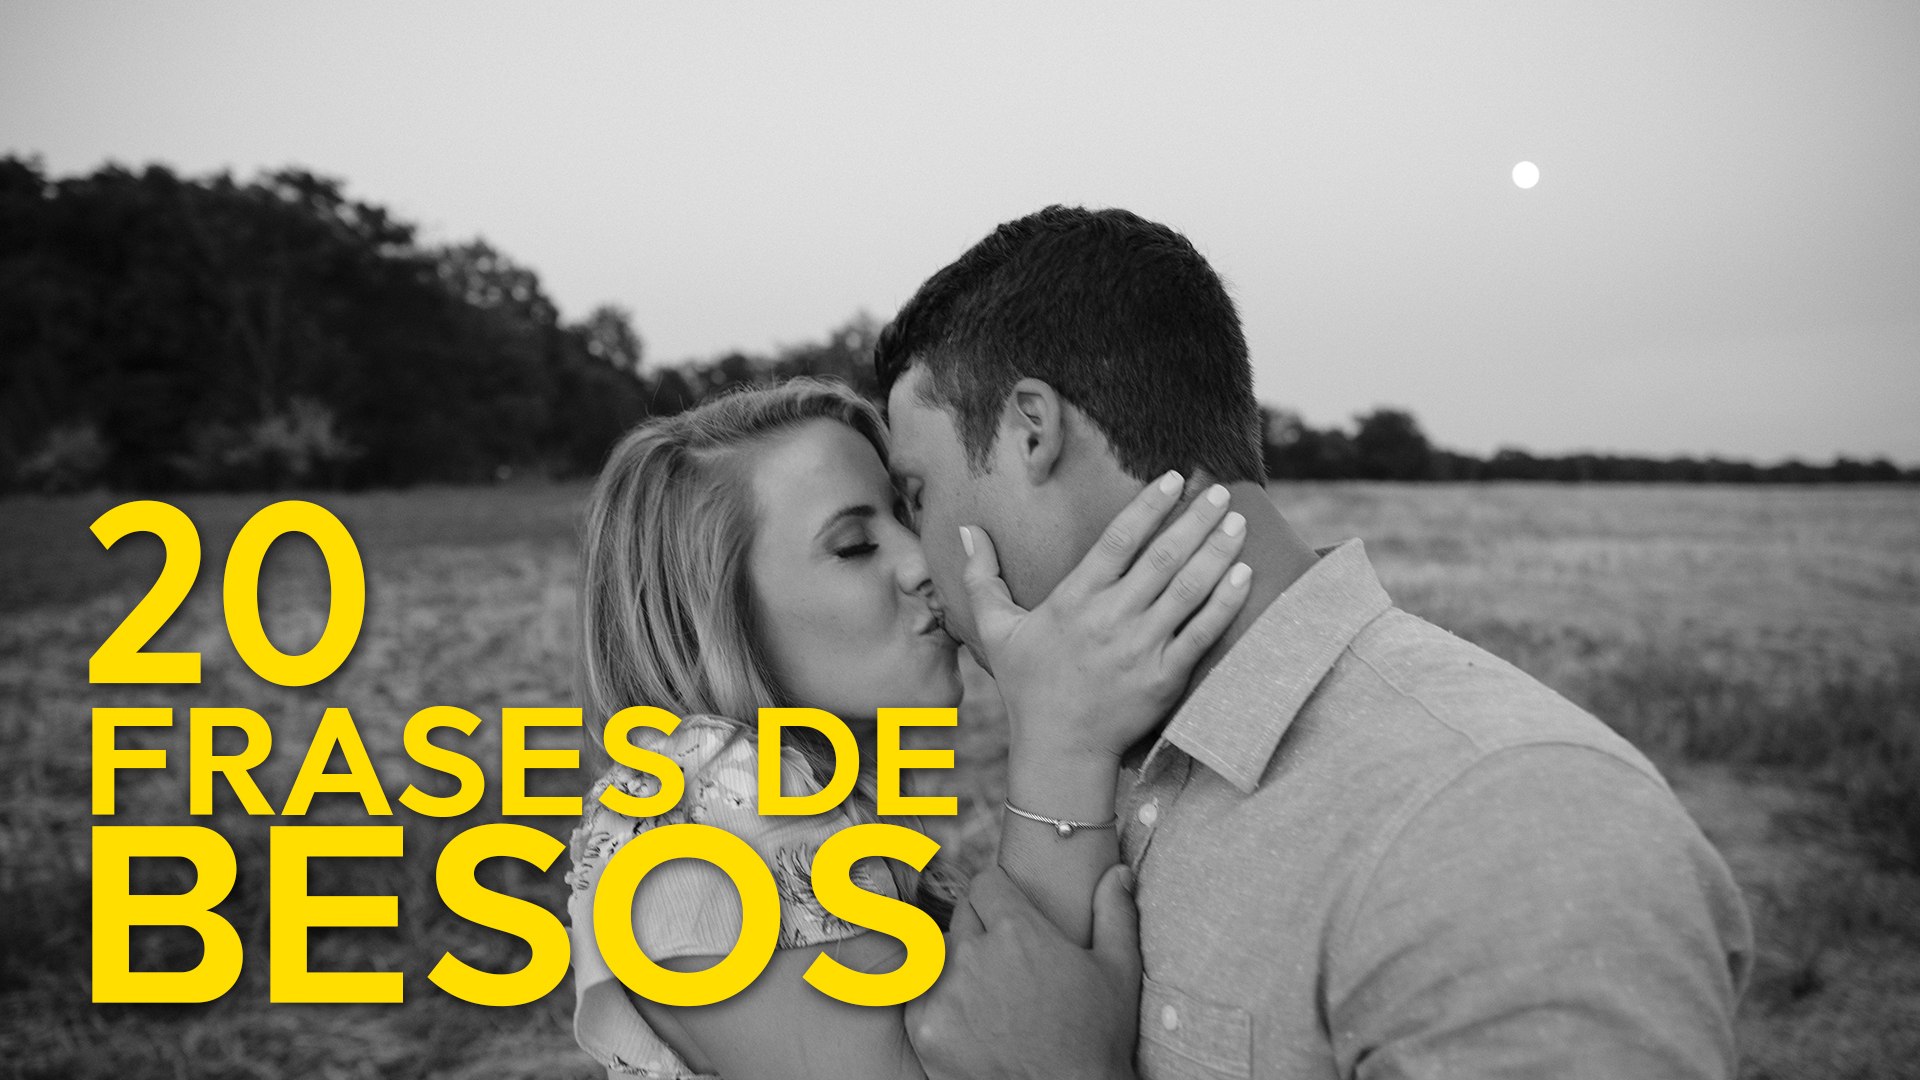 20 Frases de Besos | La mayor expresión del amor - Vídeo Dailymotion